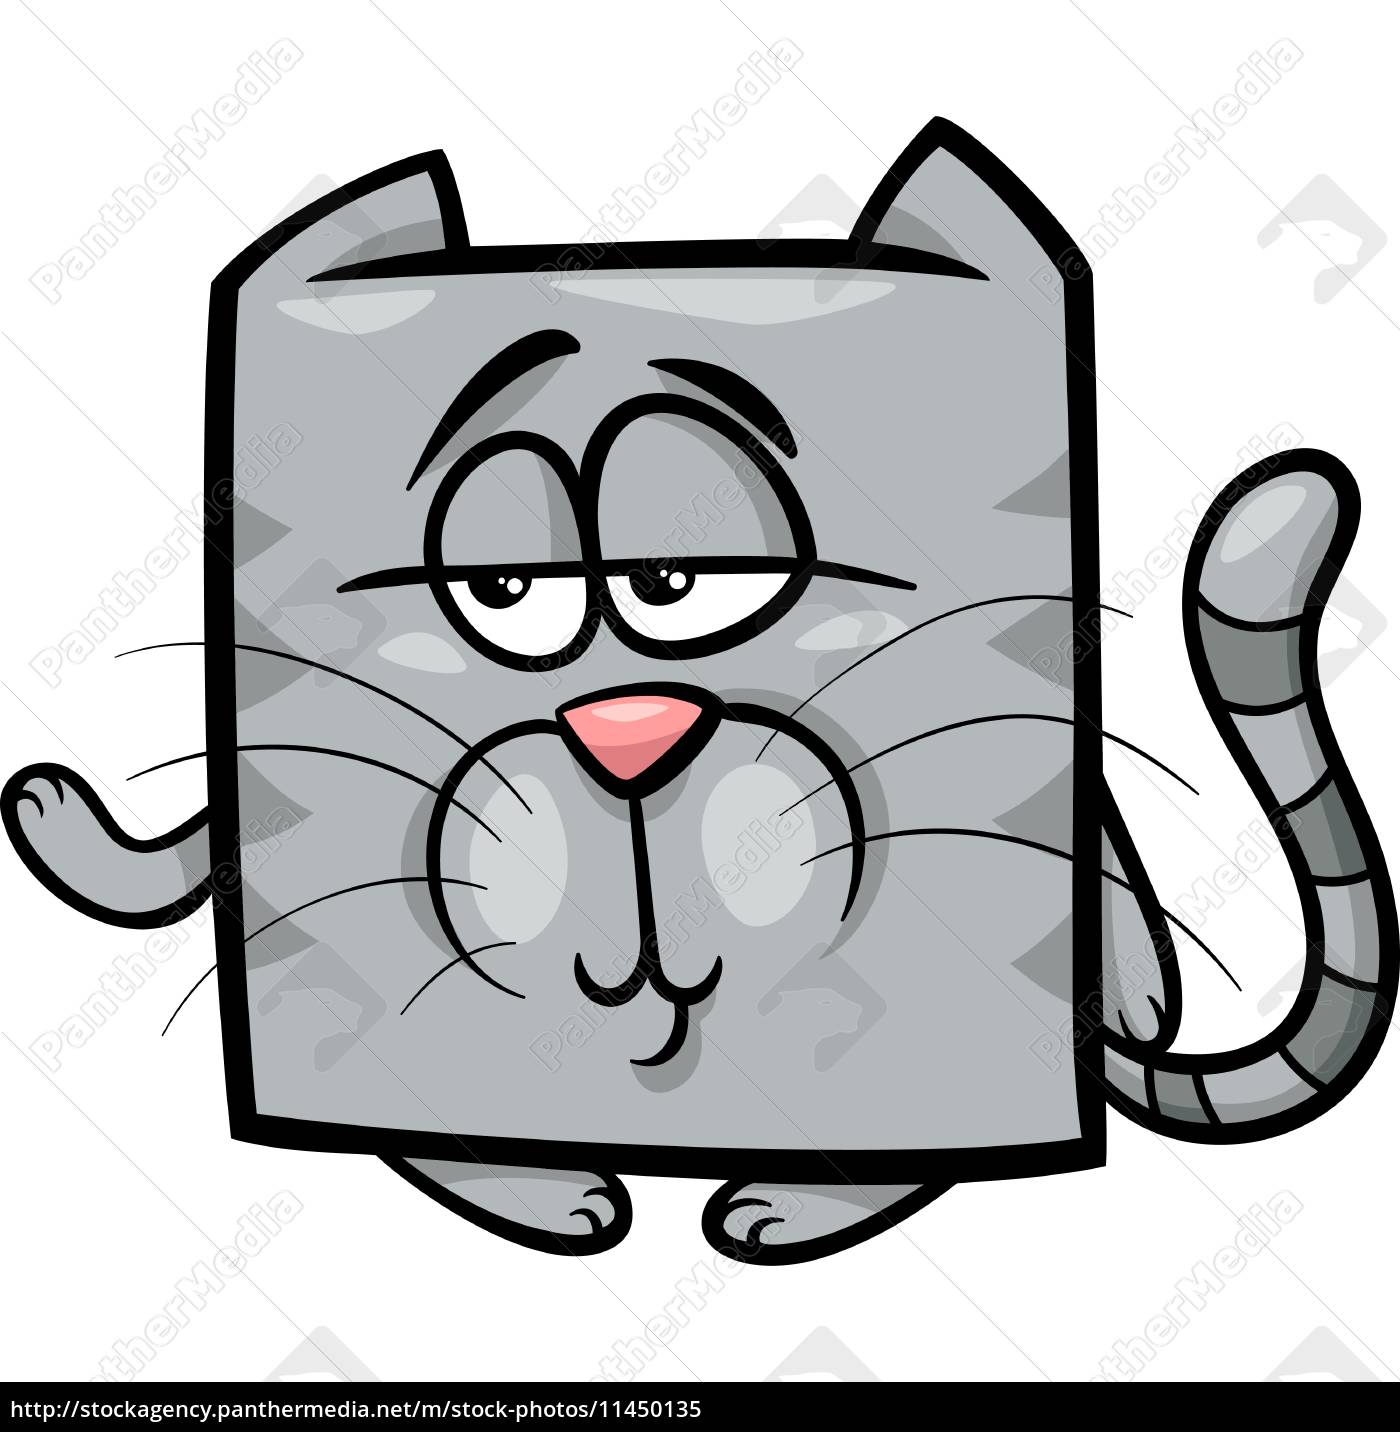 Desenho de gato cinza fofo, Vetor Premium